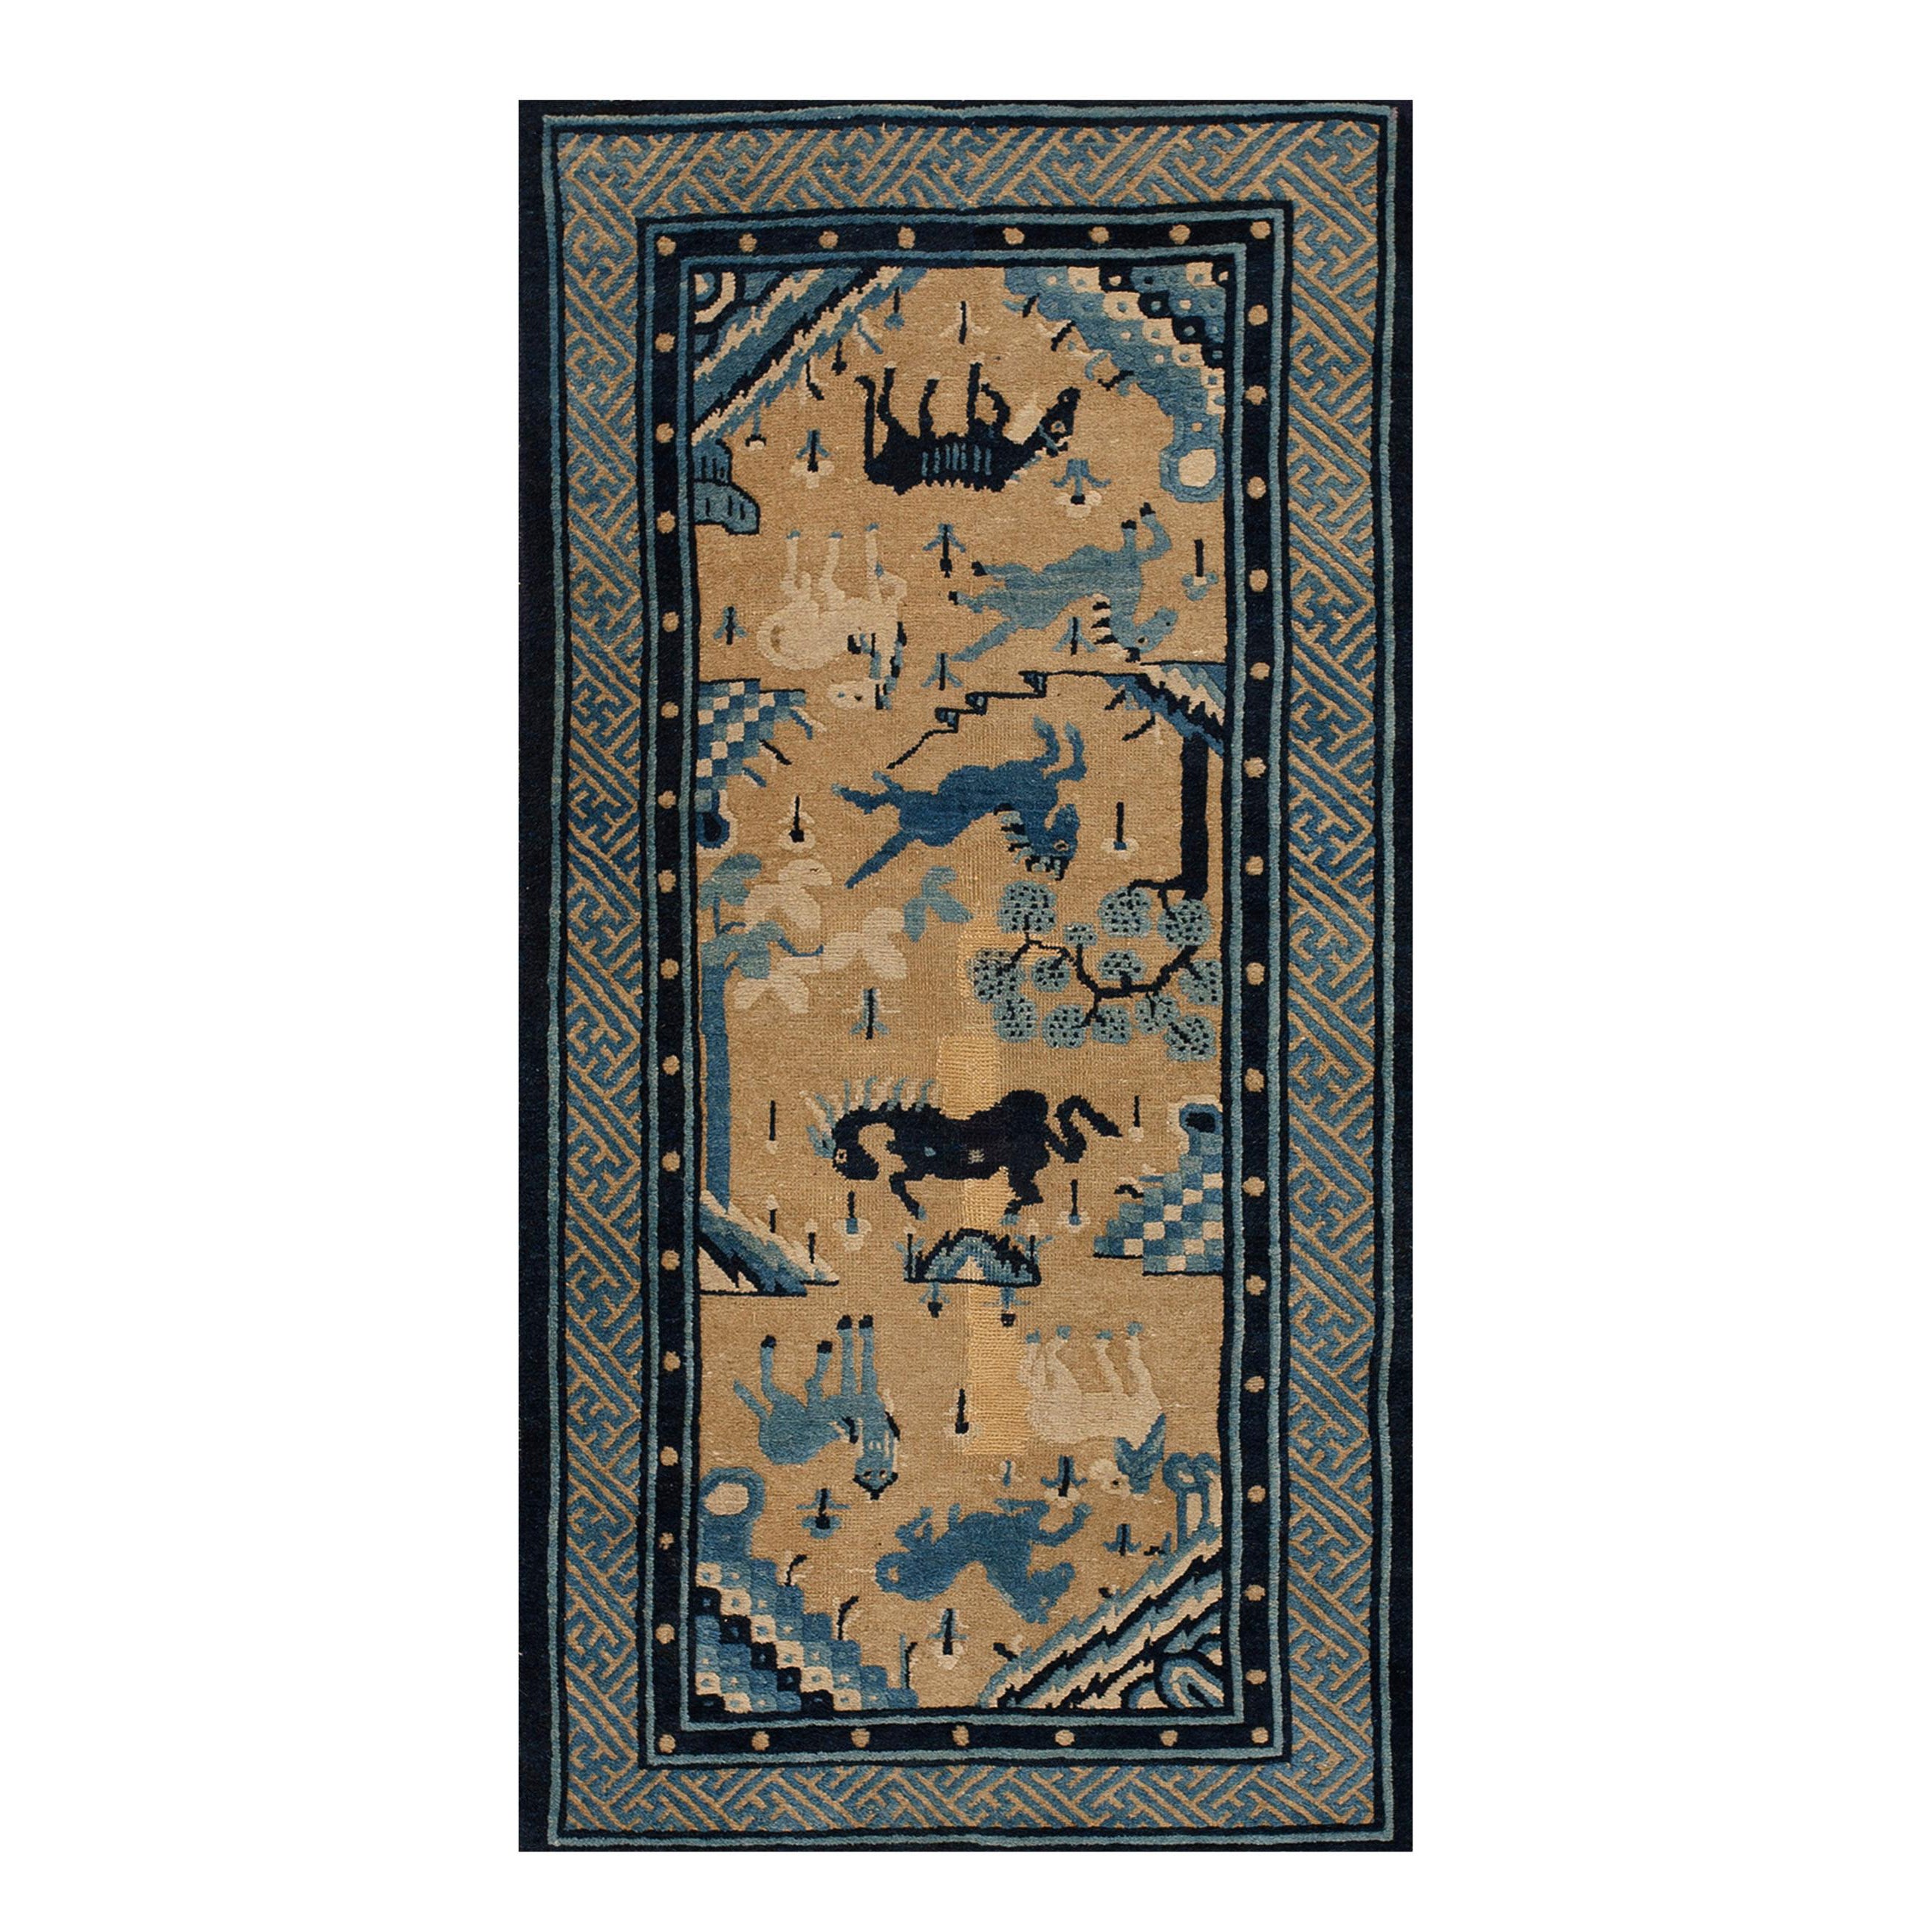 Chinesischer Baotou-Teppich des frühen 20. Jahrhunderts ( 2'6" x 4'8" - 76 x 142)